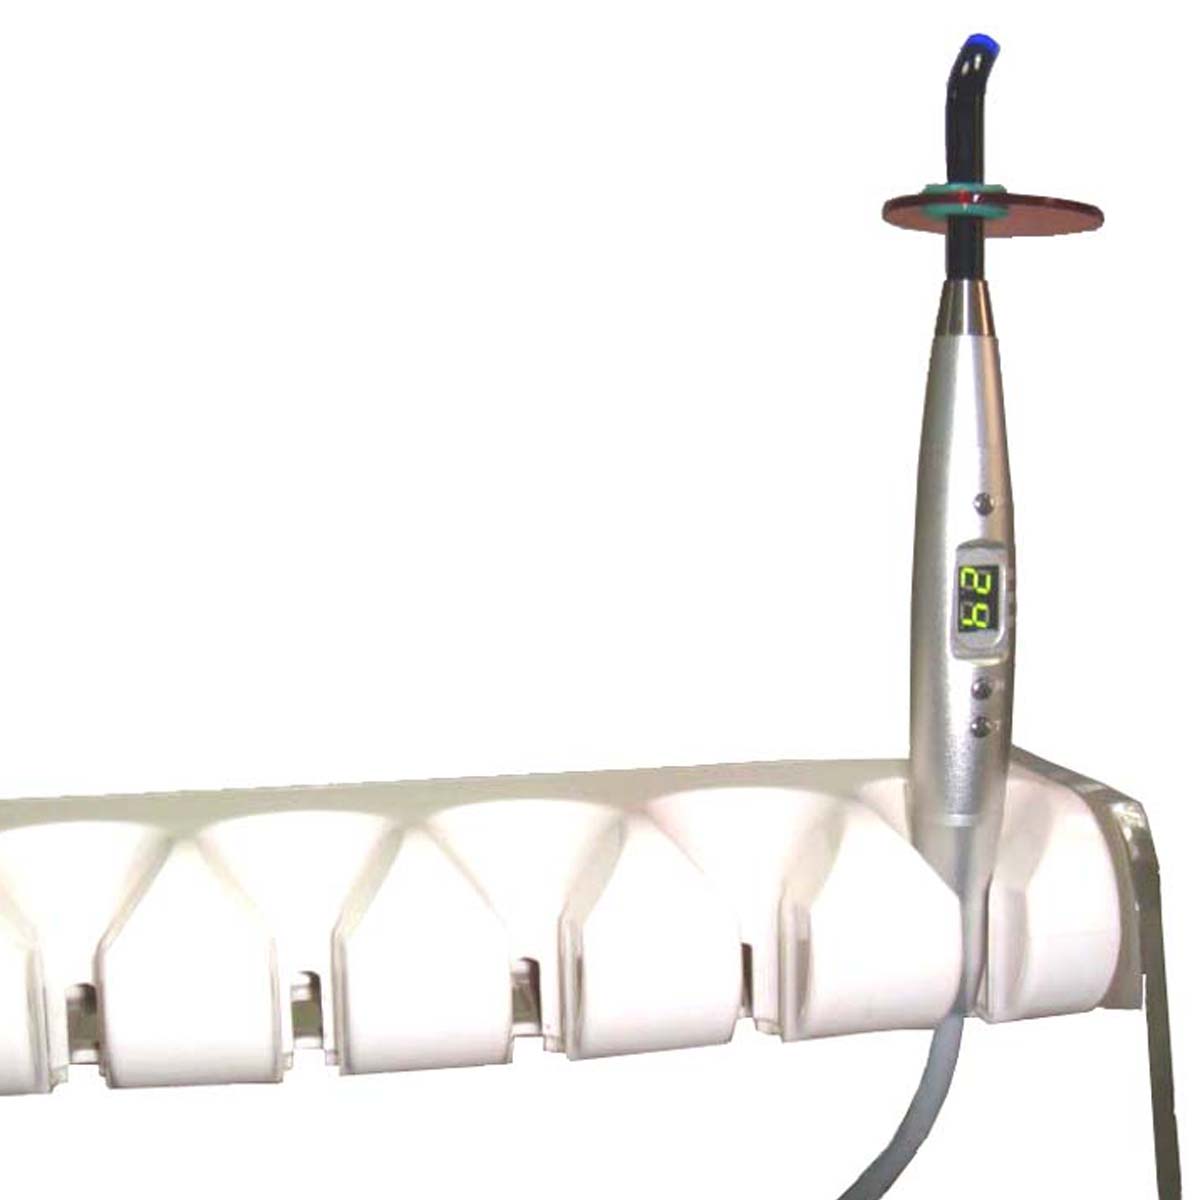 Spark Inalámbrico LED dental que cura la luz con cuerpo de aluminio - 1 Contar 5 o 7 Watt Color Negro Herramienta dentista profesional (Con cable y silla dental versión disponible)